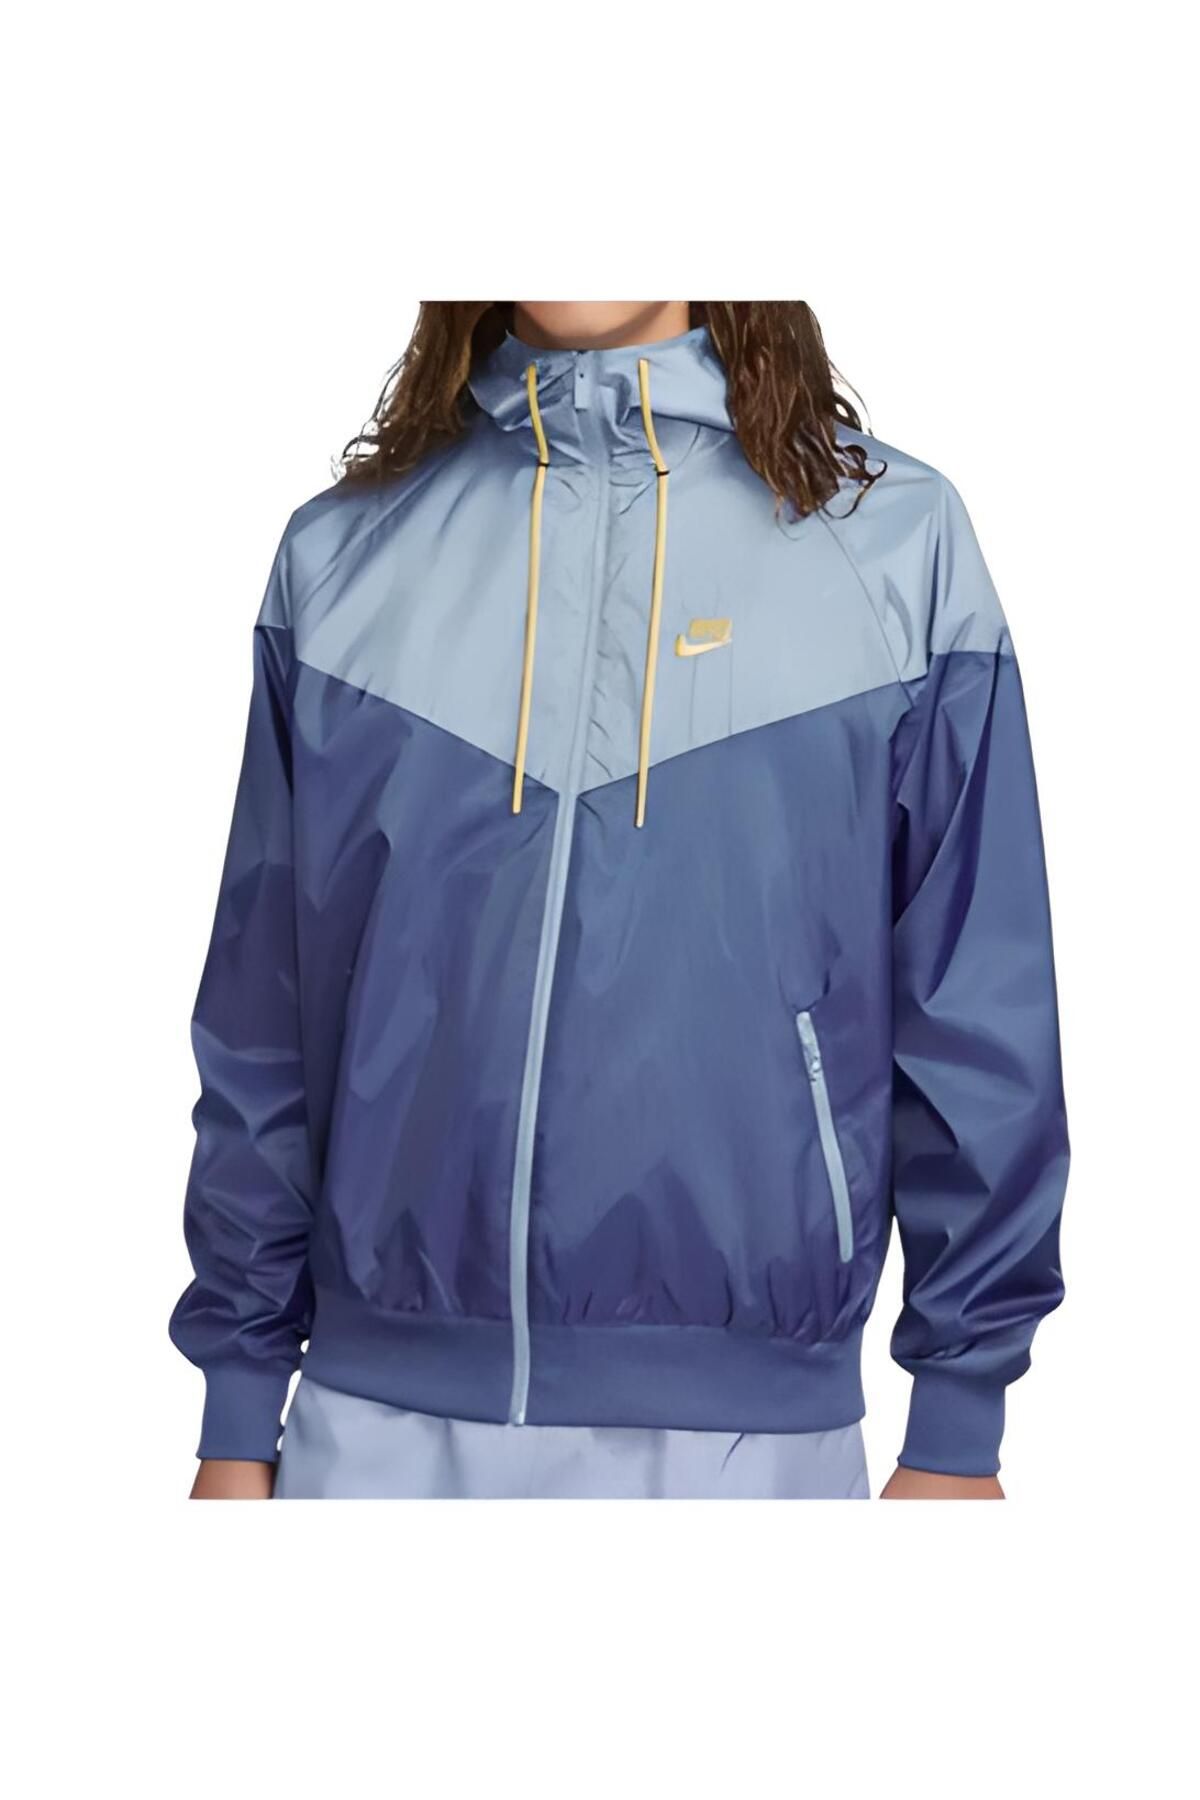 Nike Sportswear Windrunner Lacivert Erkek Yağmurluk DA0001-491